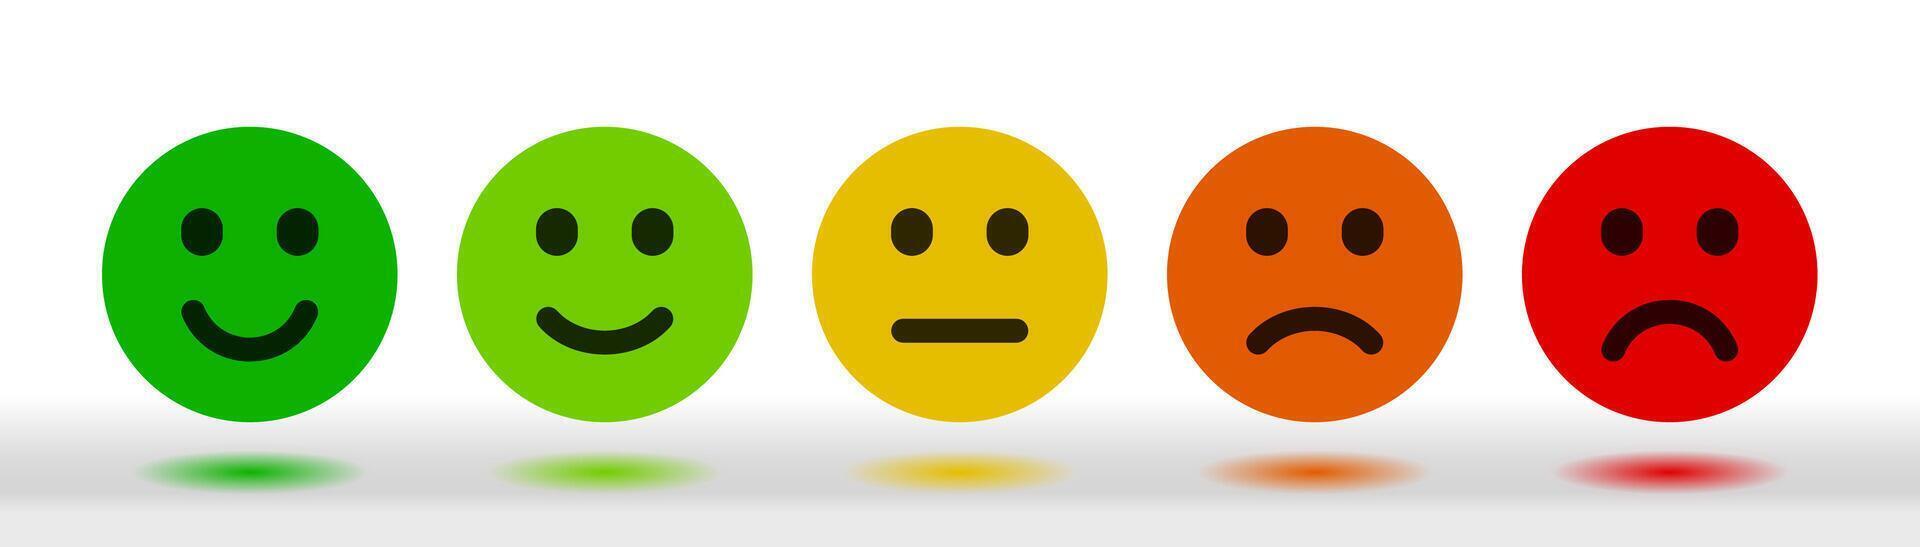 Customer Satisfaction Score Feedback Scale Emoticon. vector